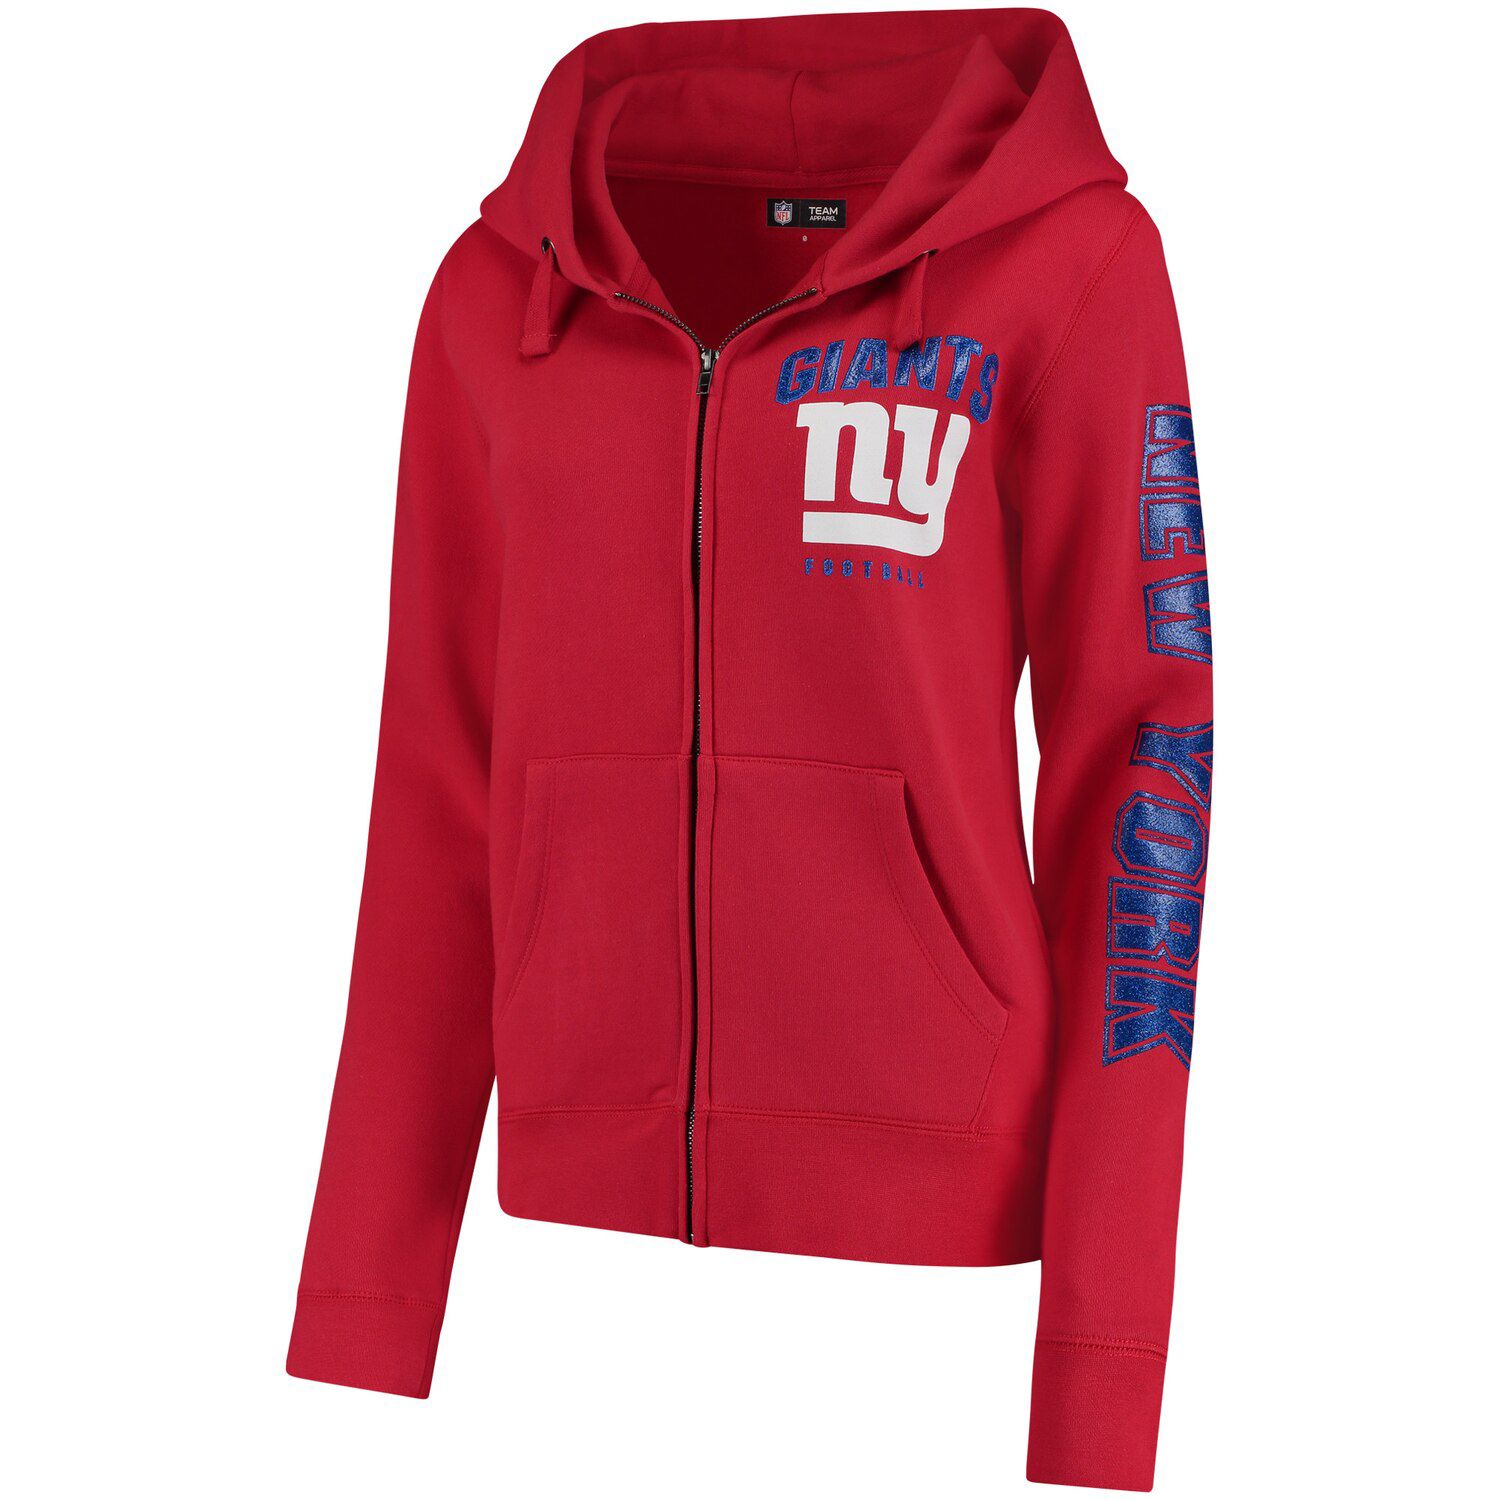 new york giants zip hoodie